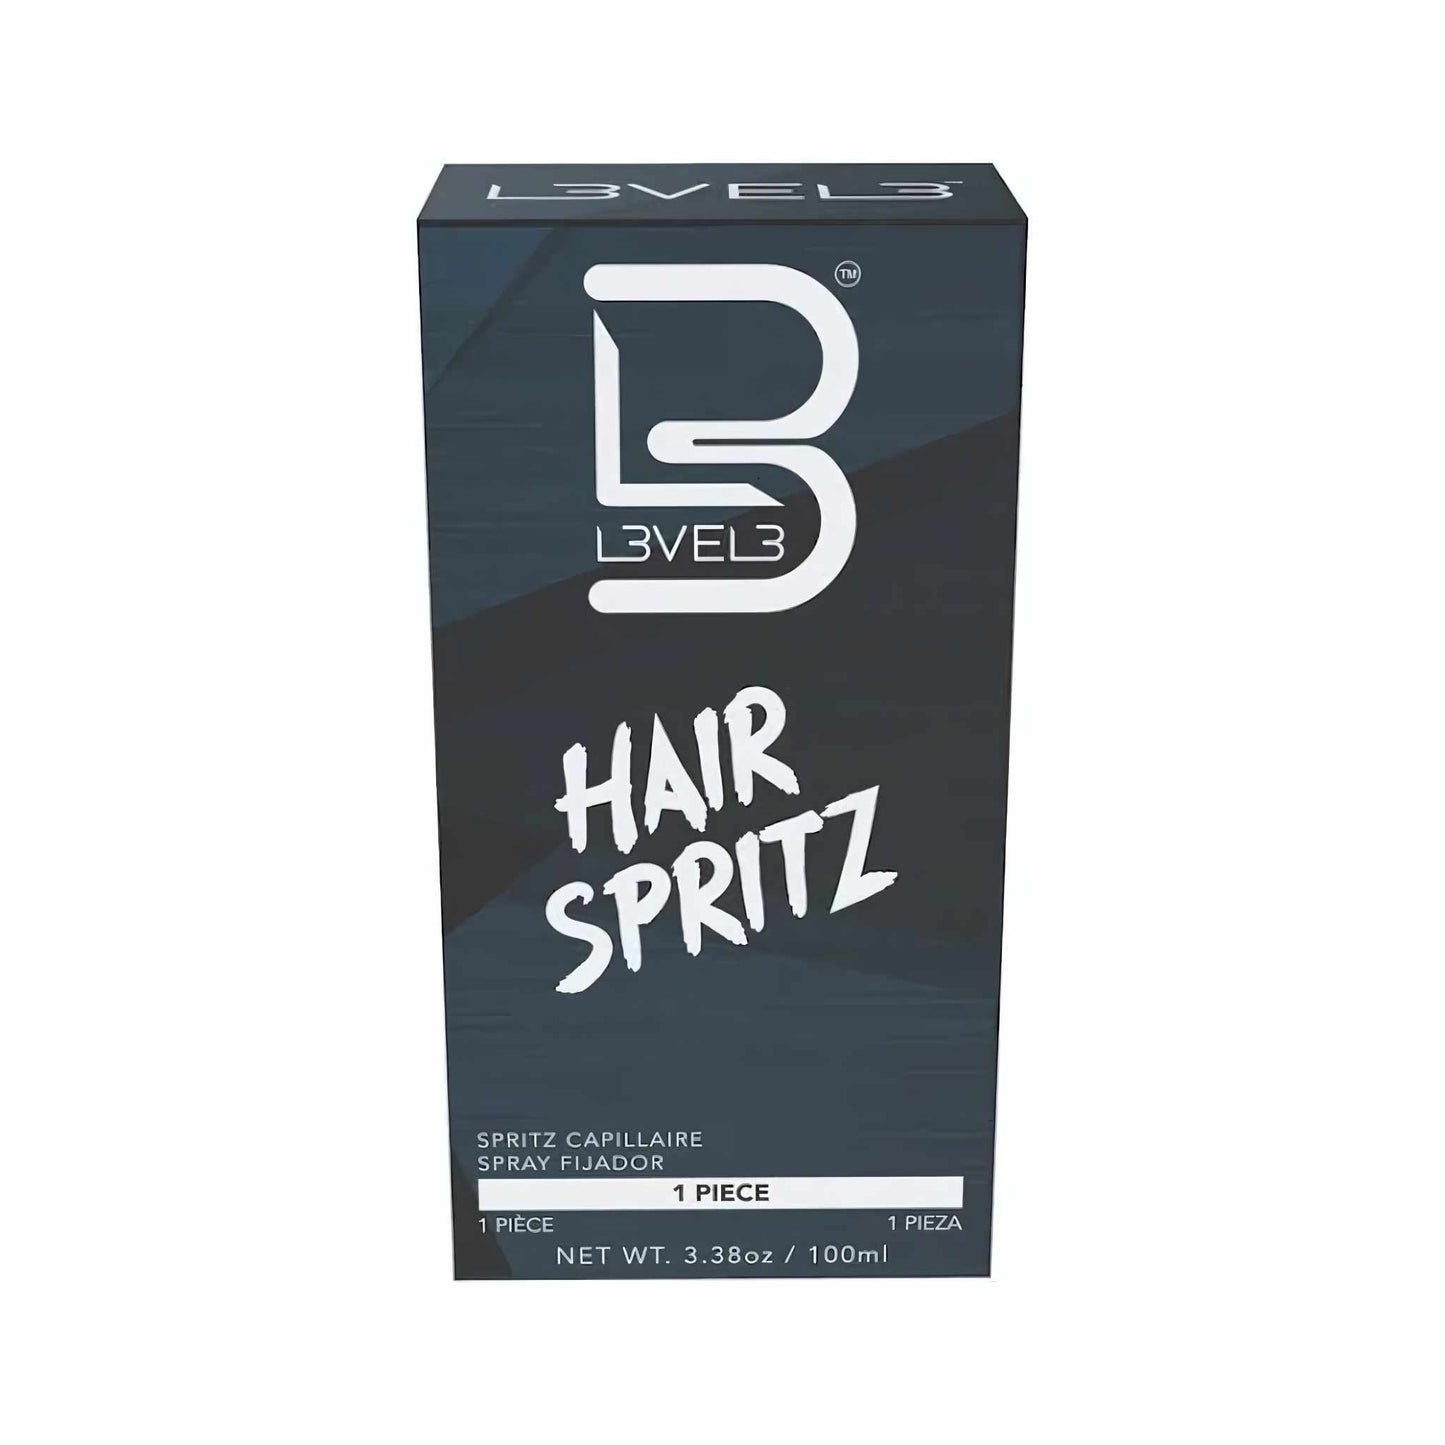 L3VEL3 Hair Spritz 100 ml Frontside Box